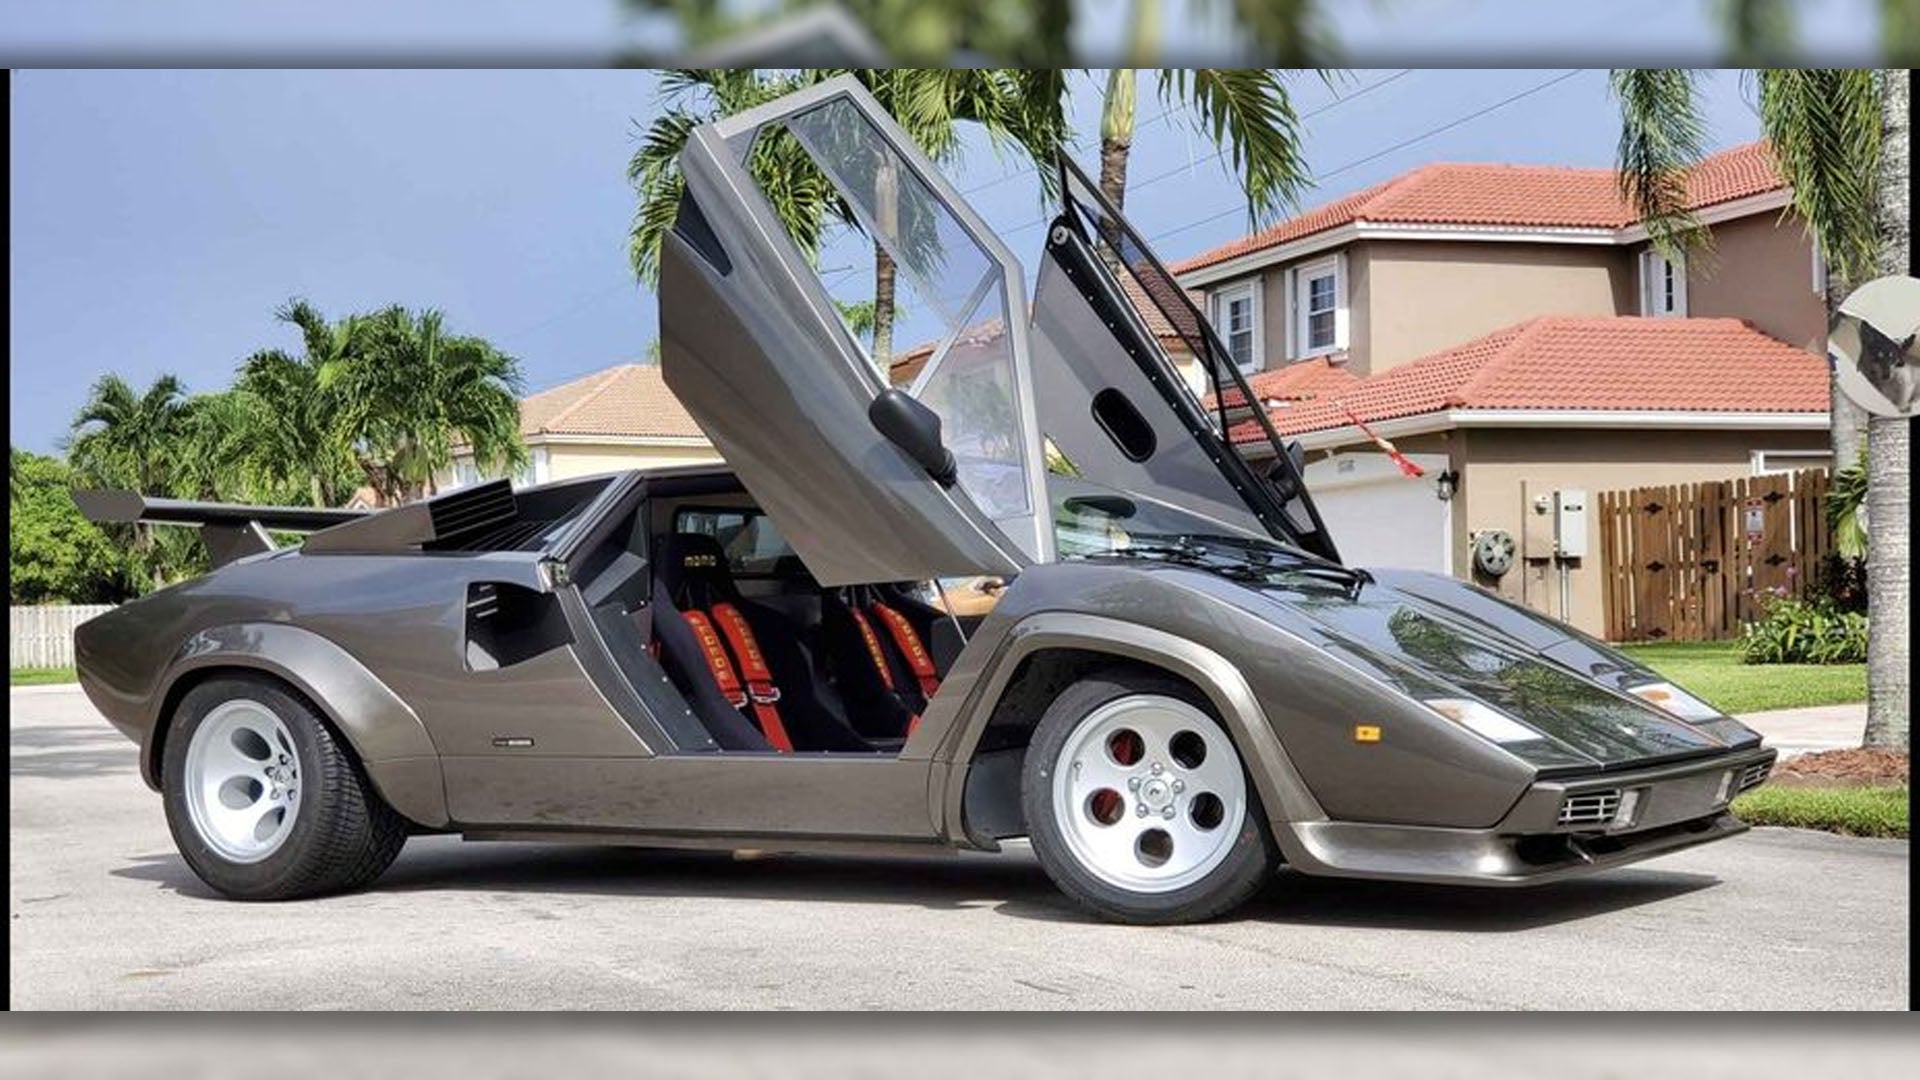 Bodrumunuzda inşa edilen muhteşem bir Lamborghini Countach kopyası 229.000$’a sizin olabilir